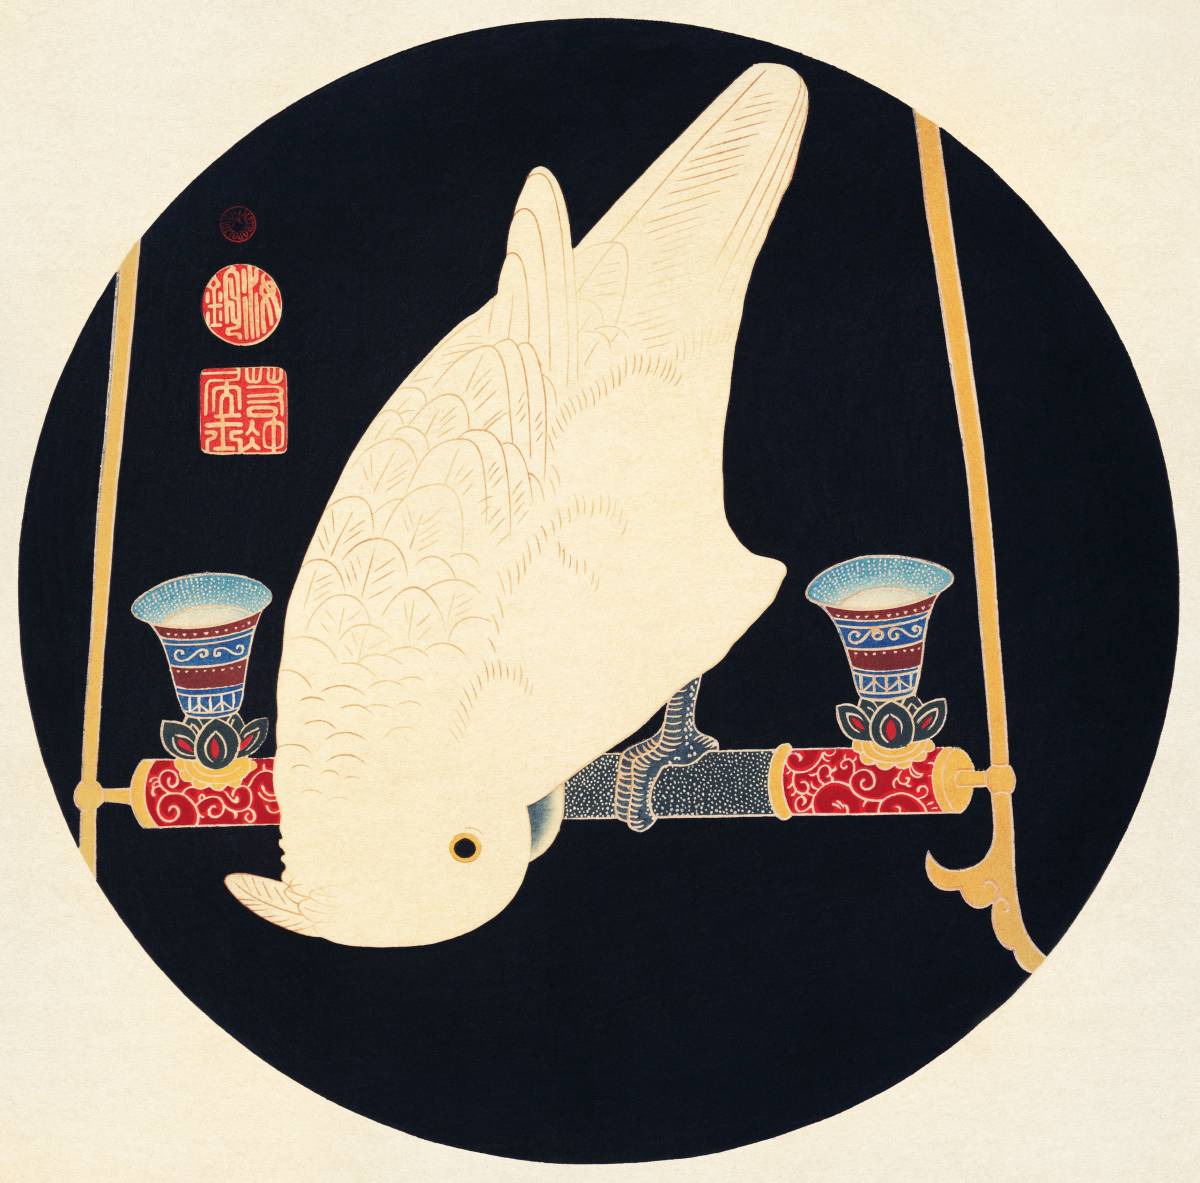 Nueva técnica especial de pintura de impresión de alta calidad de Flores y pájaros de Ito Jakuchu - Loro Marco de madera Procesamiento de fotocatalizador Precio especial 1980 yenes (envío incluido) Cómpralo ahora, obra de arte, cuadro, otros